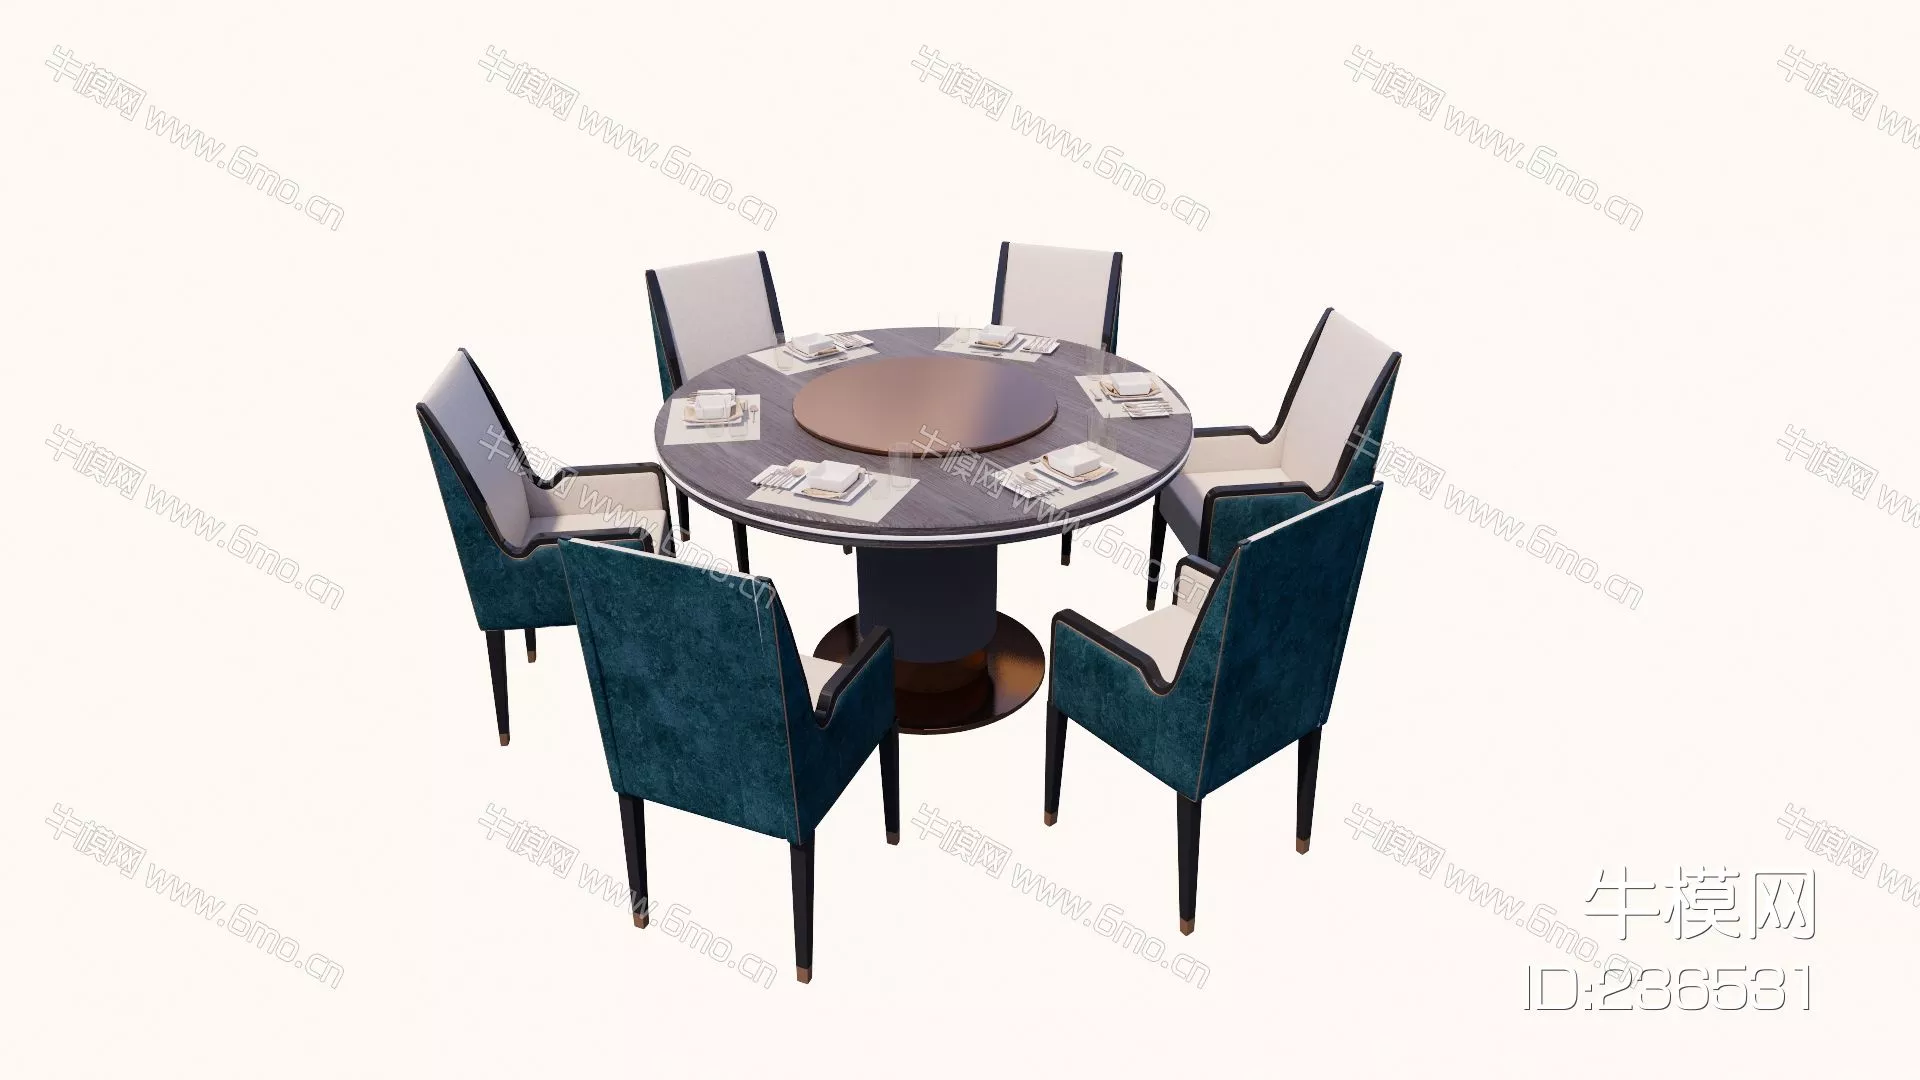 MODERN DINING TABLE SET - SKETCHUP 3D MODEL - ENSCAPE - 236531